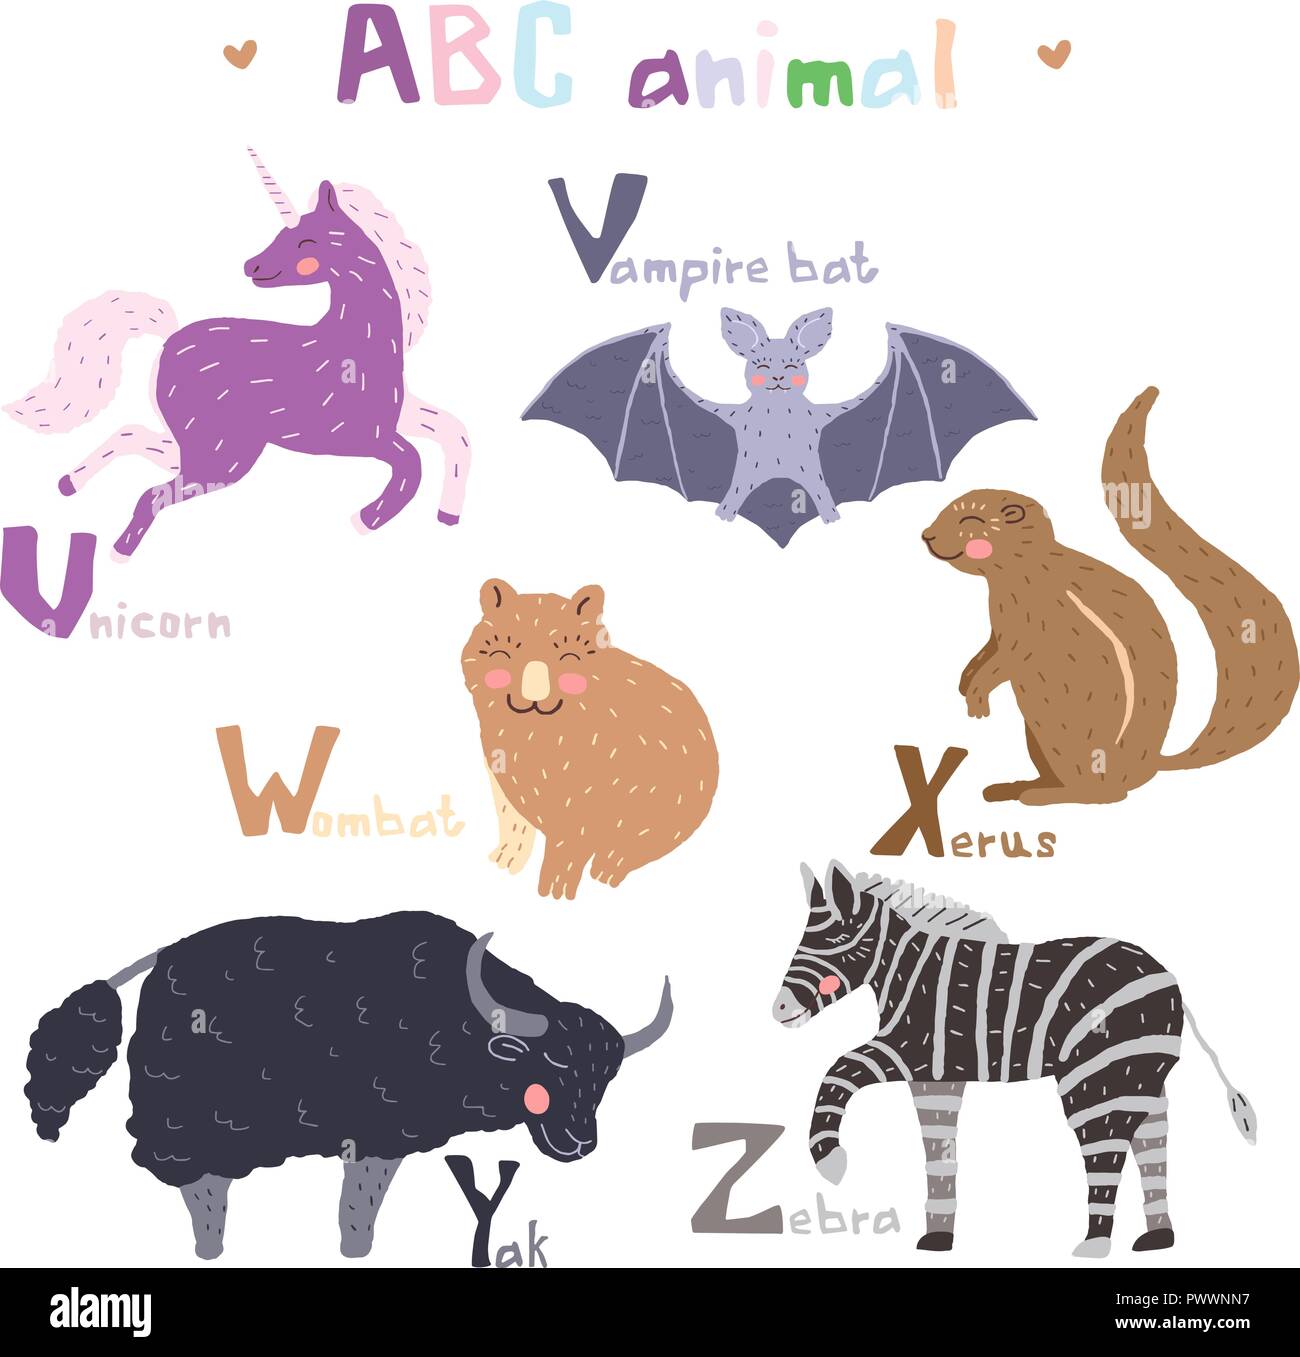 Vektor Hand gezeichnet cute abc Alphabet Tier skandinavisches Design, Zebra, Vampir Fledermaus, Einhorn, Wombat, Xerus, Yak Stock Vektor